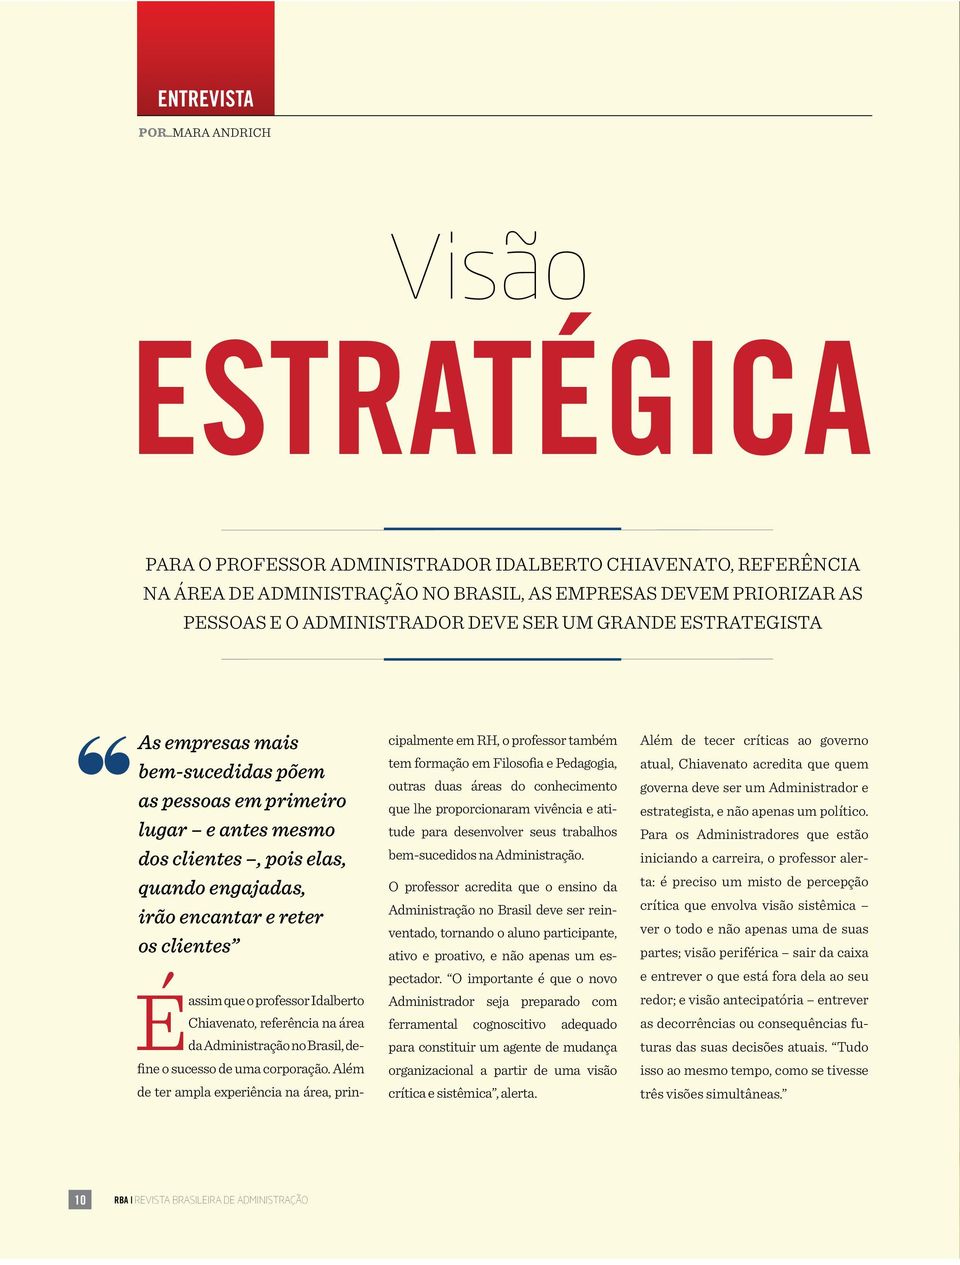 clientes É assim que o professor Idalberto Chiavenato, referência na área da Administração no Brasil, define o sucesso de uma corporação.